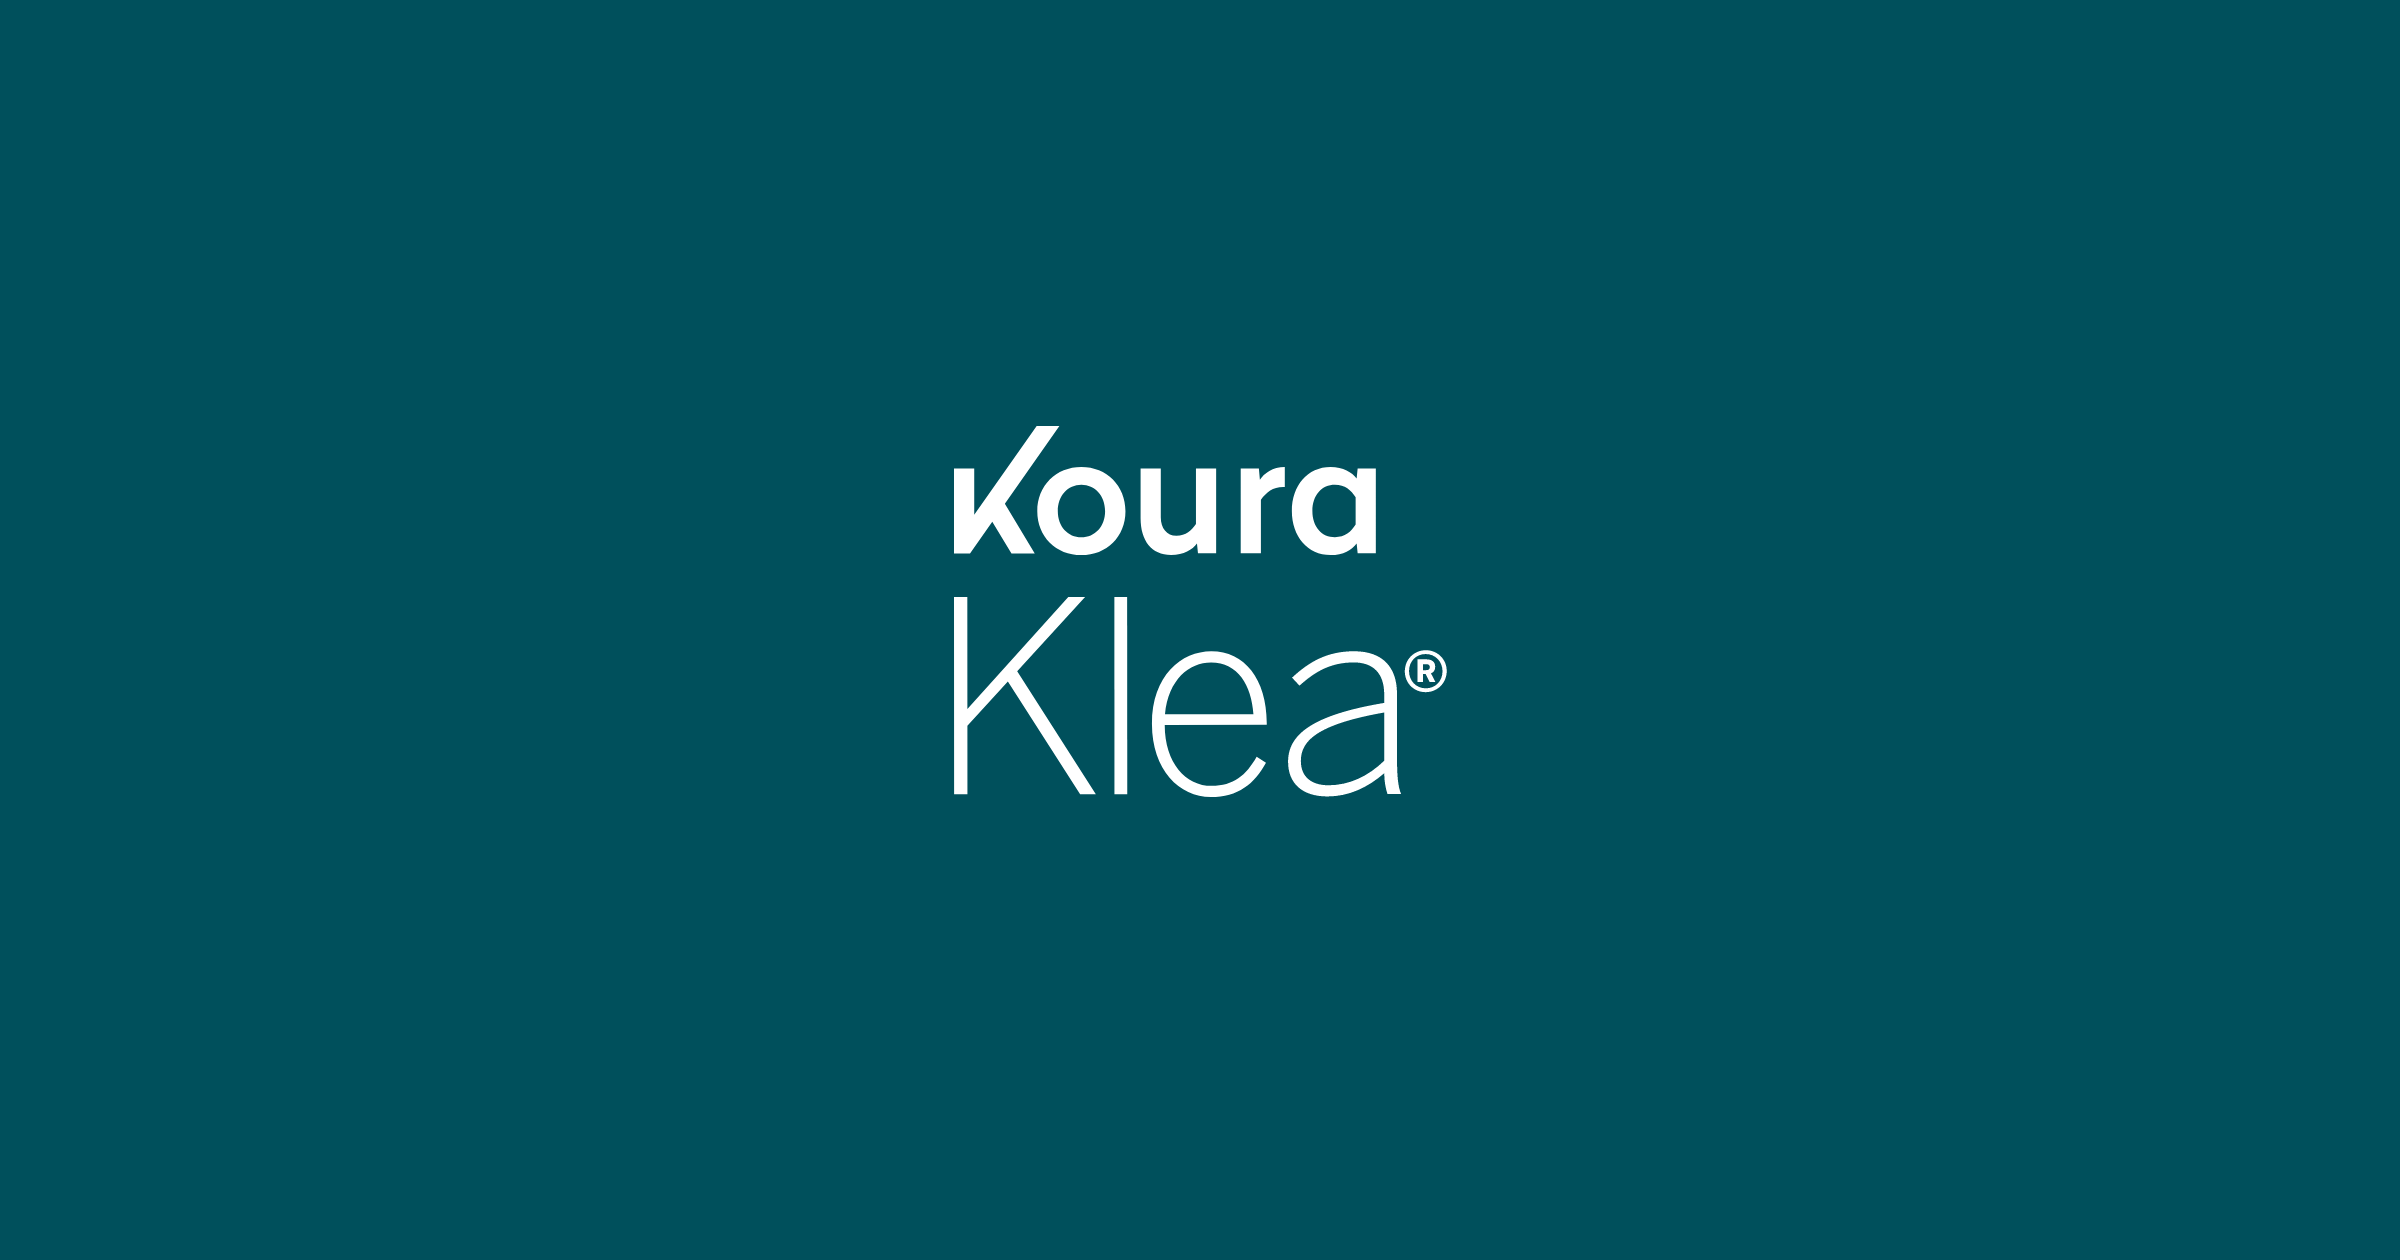 Koura Klea logo